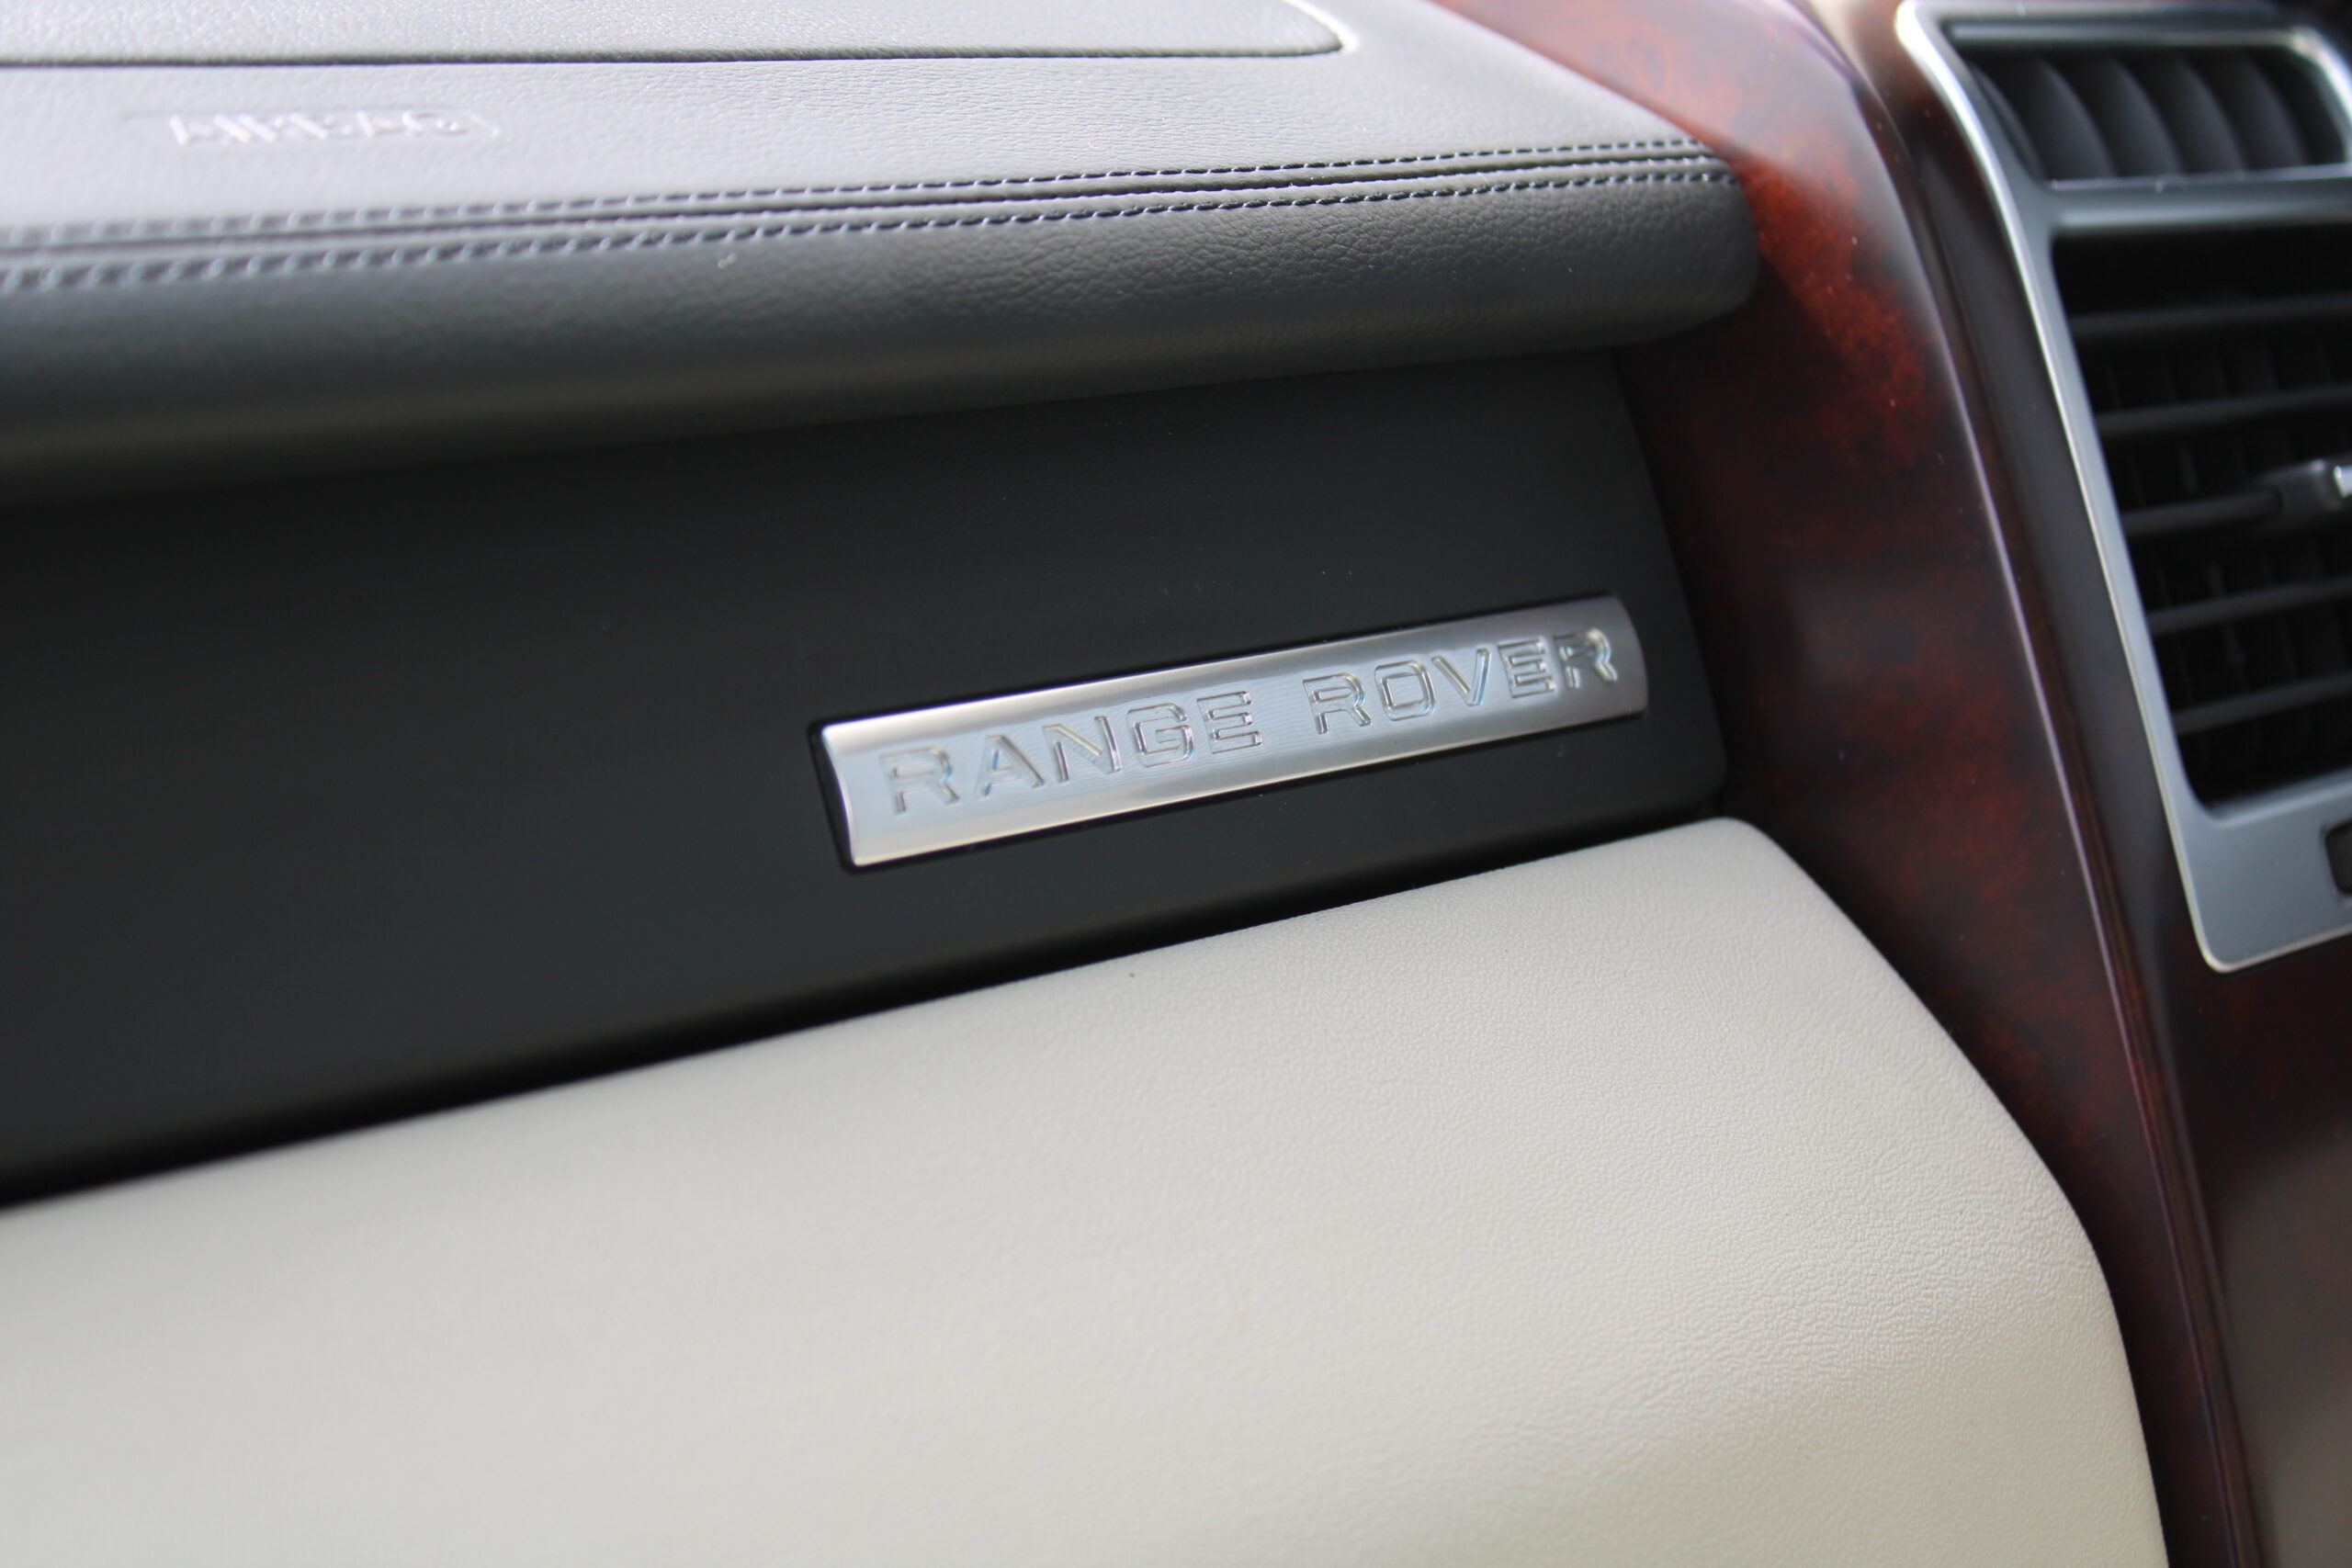 Range Rover 3.6 TDV8 Vogue/ Youngtimer/ 2e eigenaar/ Orig. NL